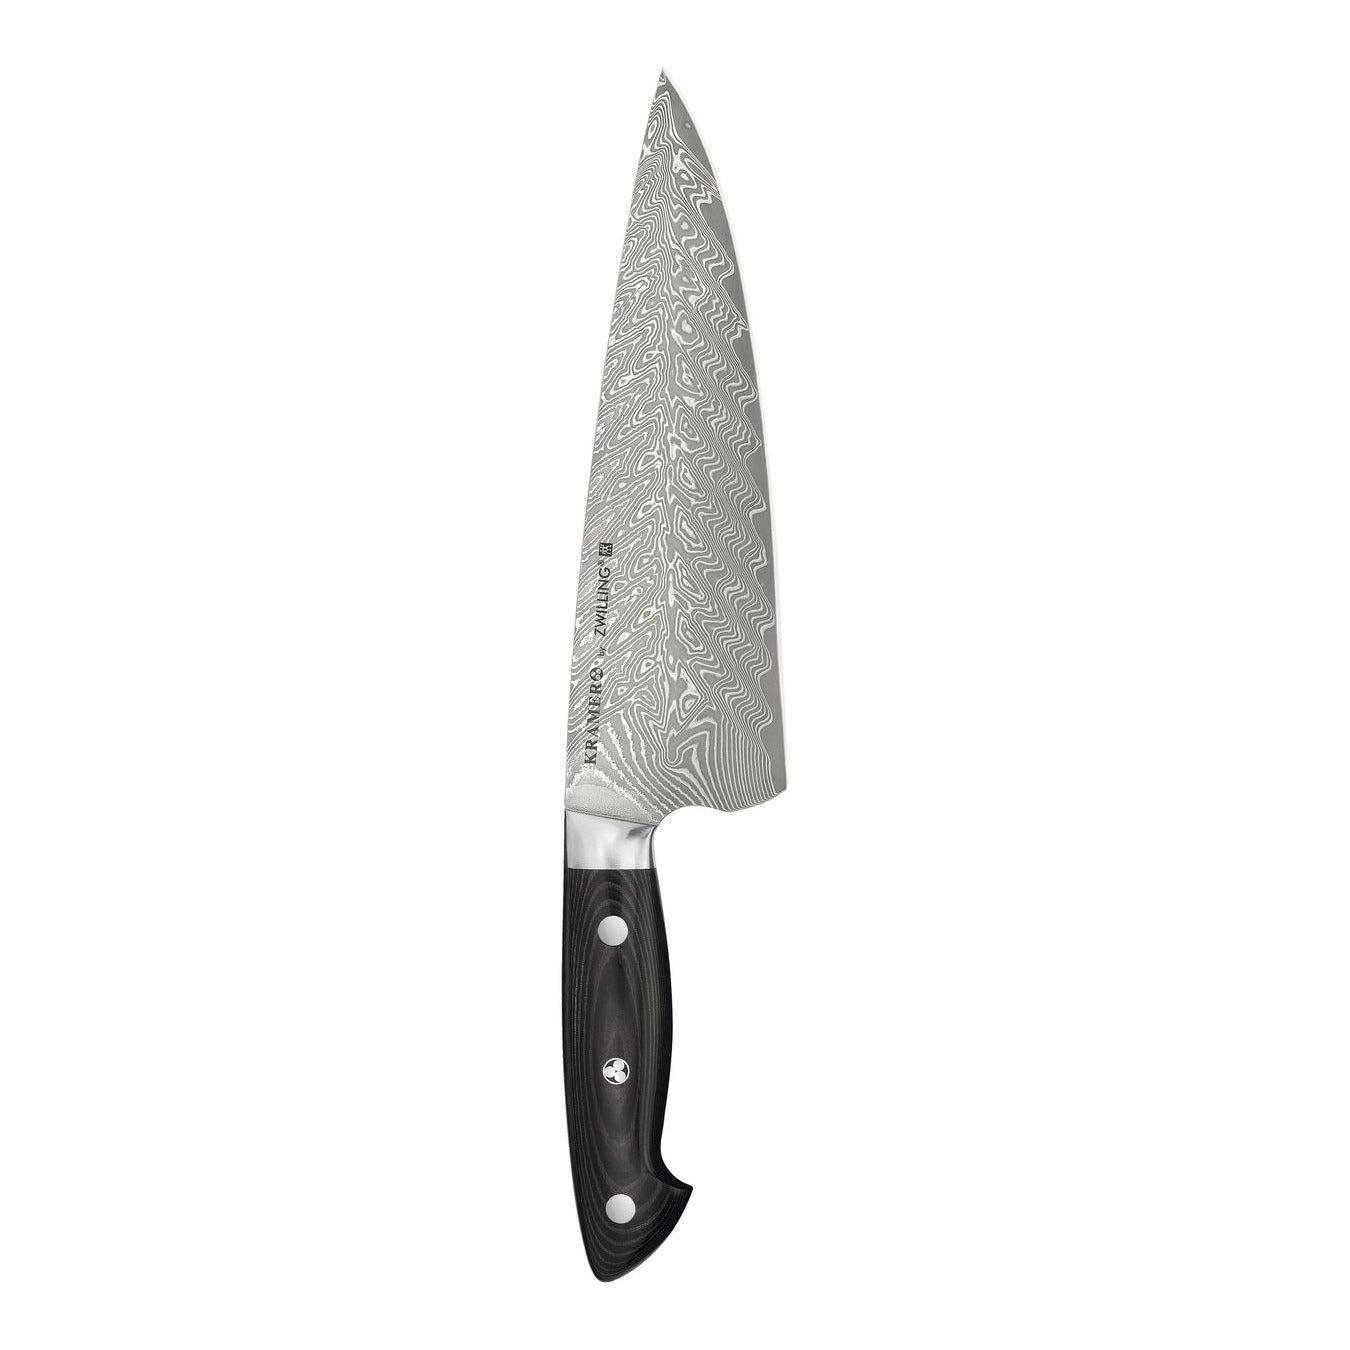 Zwilling Kramer Euroline Stainless Steel Damascus 8" Chef Knife